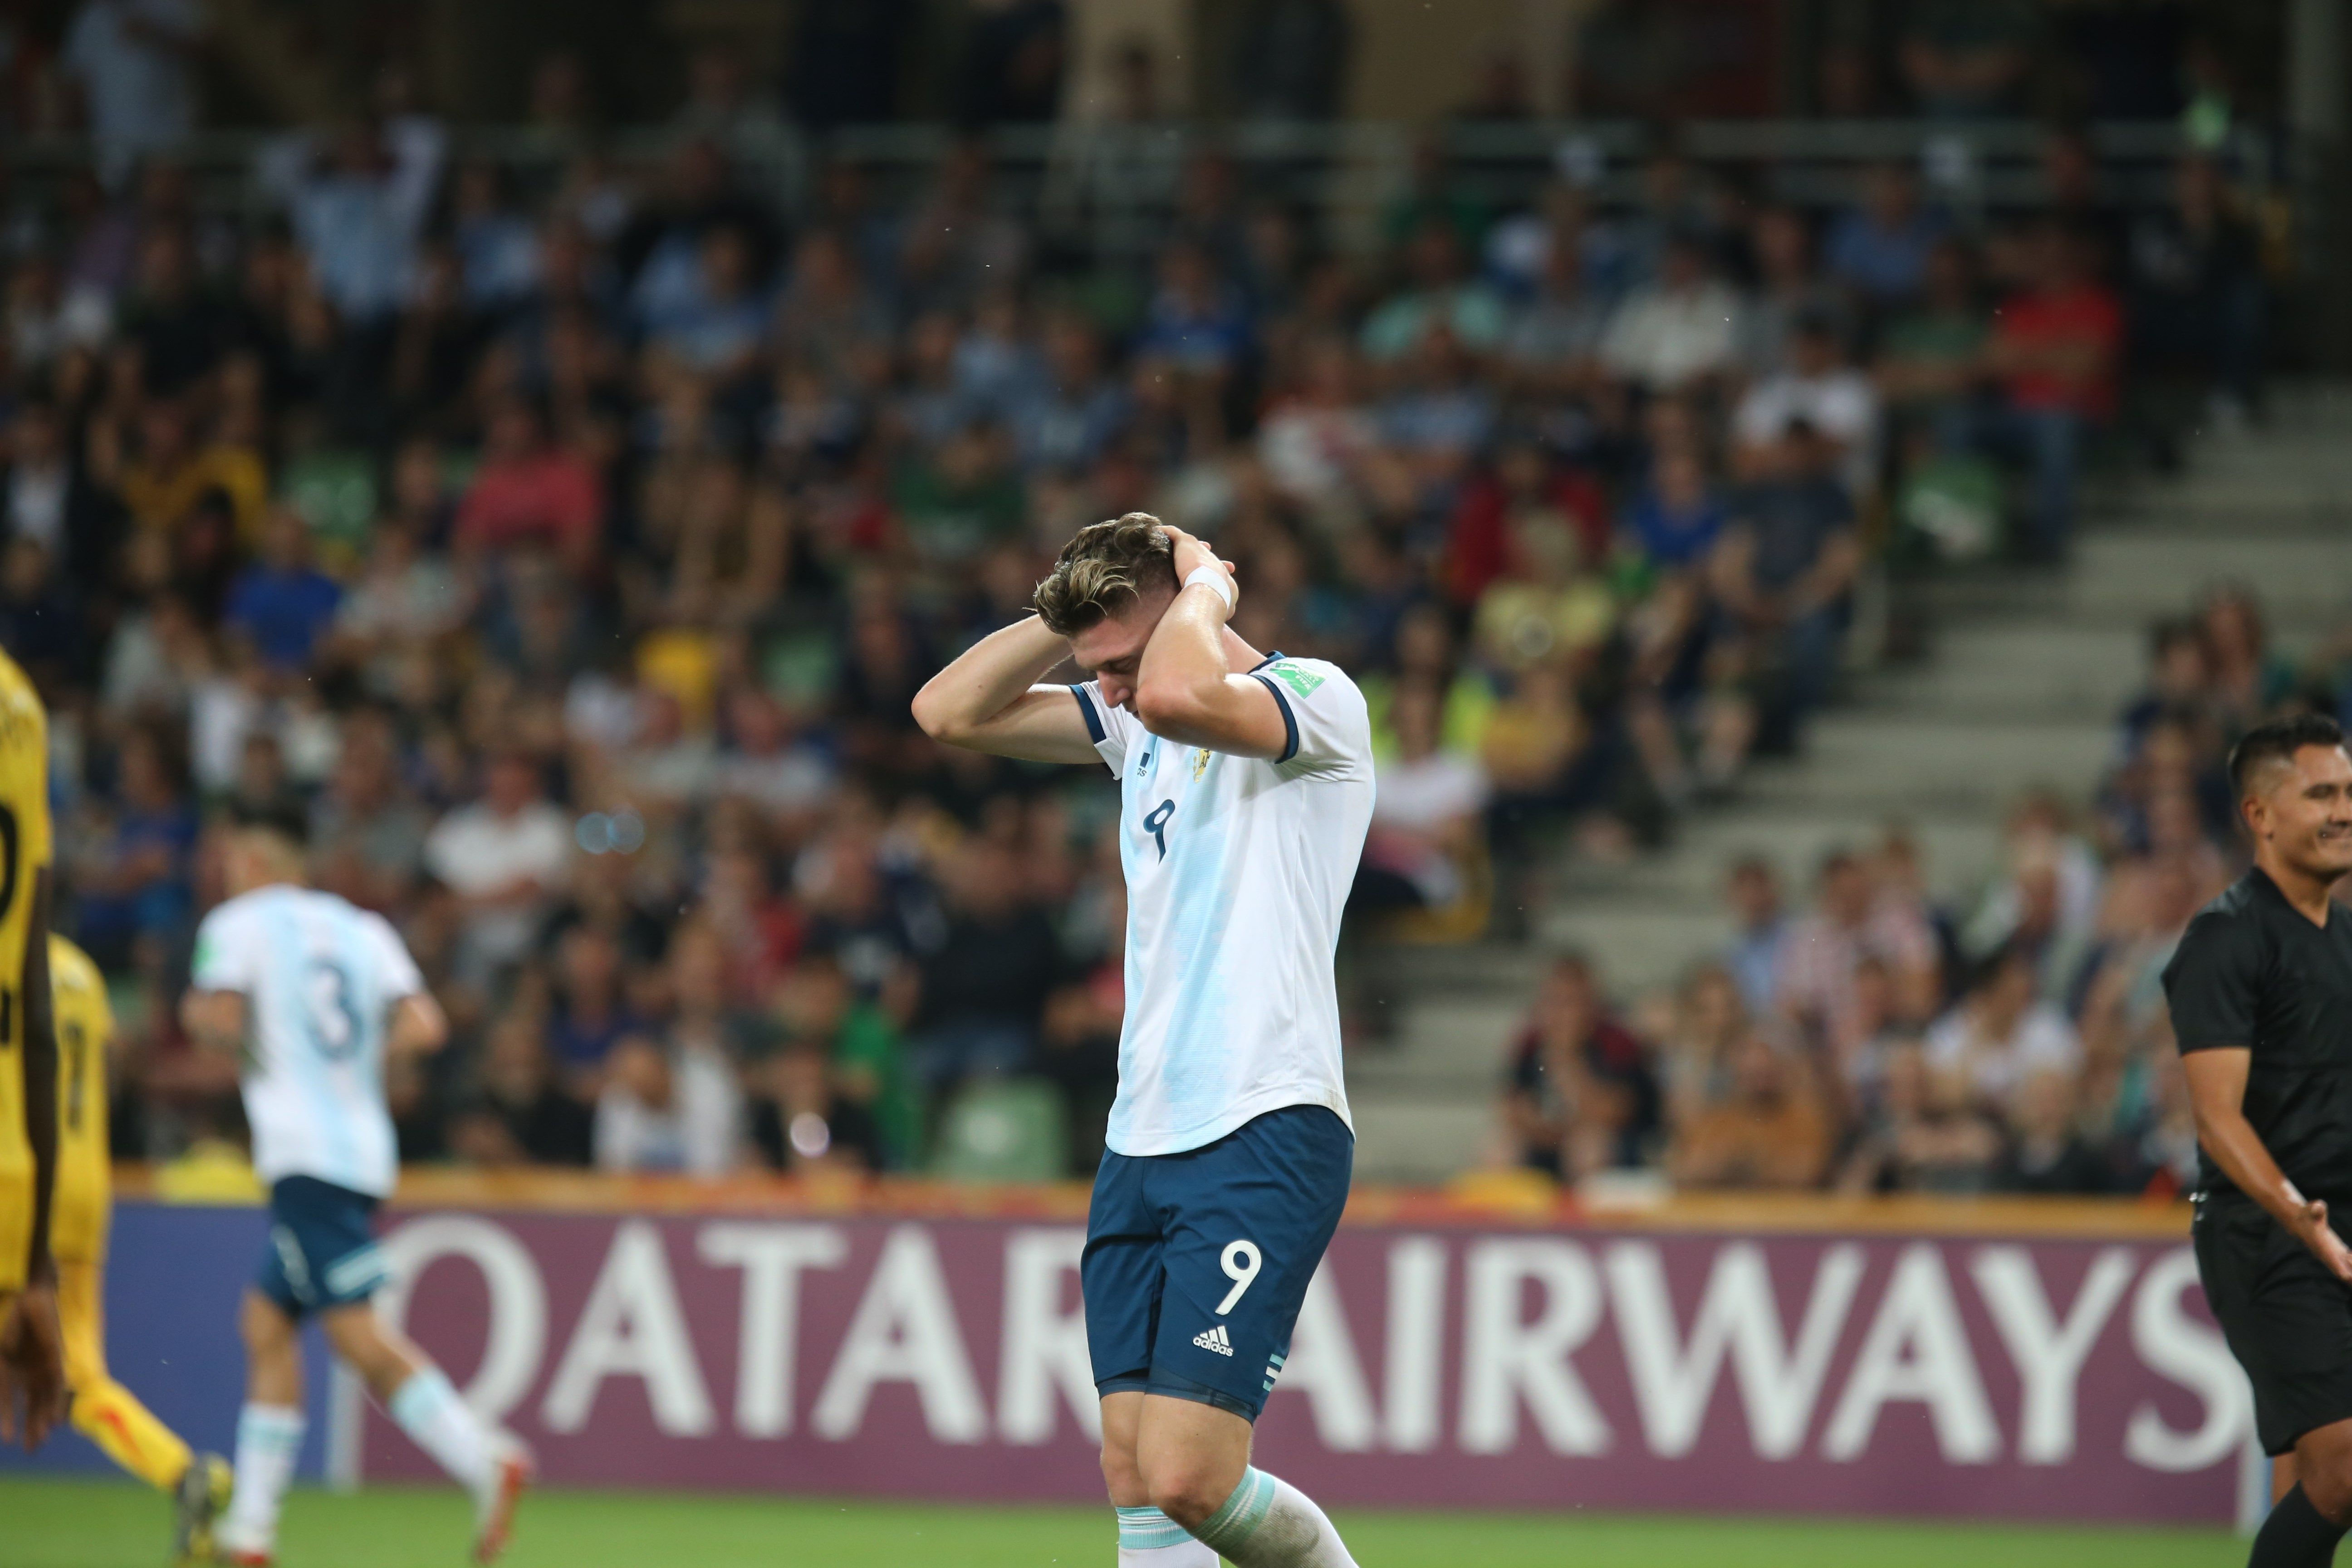 El argentino Adolfo Gaich reacciona durante un partido por el Mundial Sub'20 de la FIFA entre Argentina y Mali este martes, en el estadio Bielsko-Biala, en la ciudad de Bielsko-Biala (Polonia). (Foto Prensa Libre: EFE)